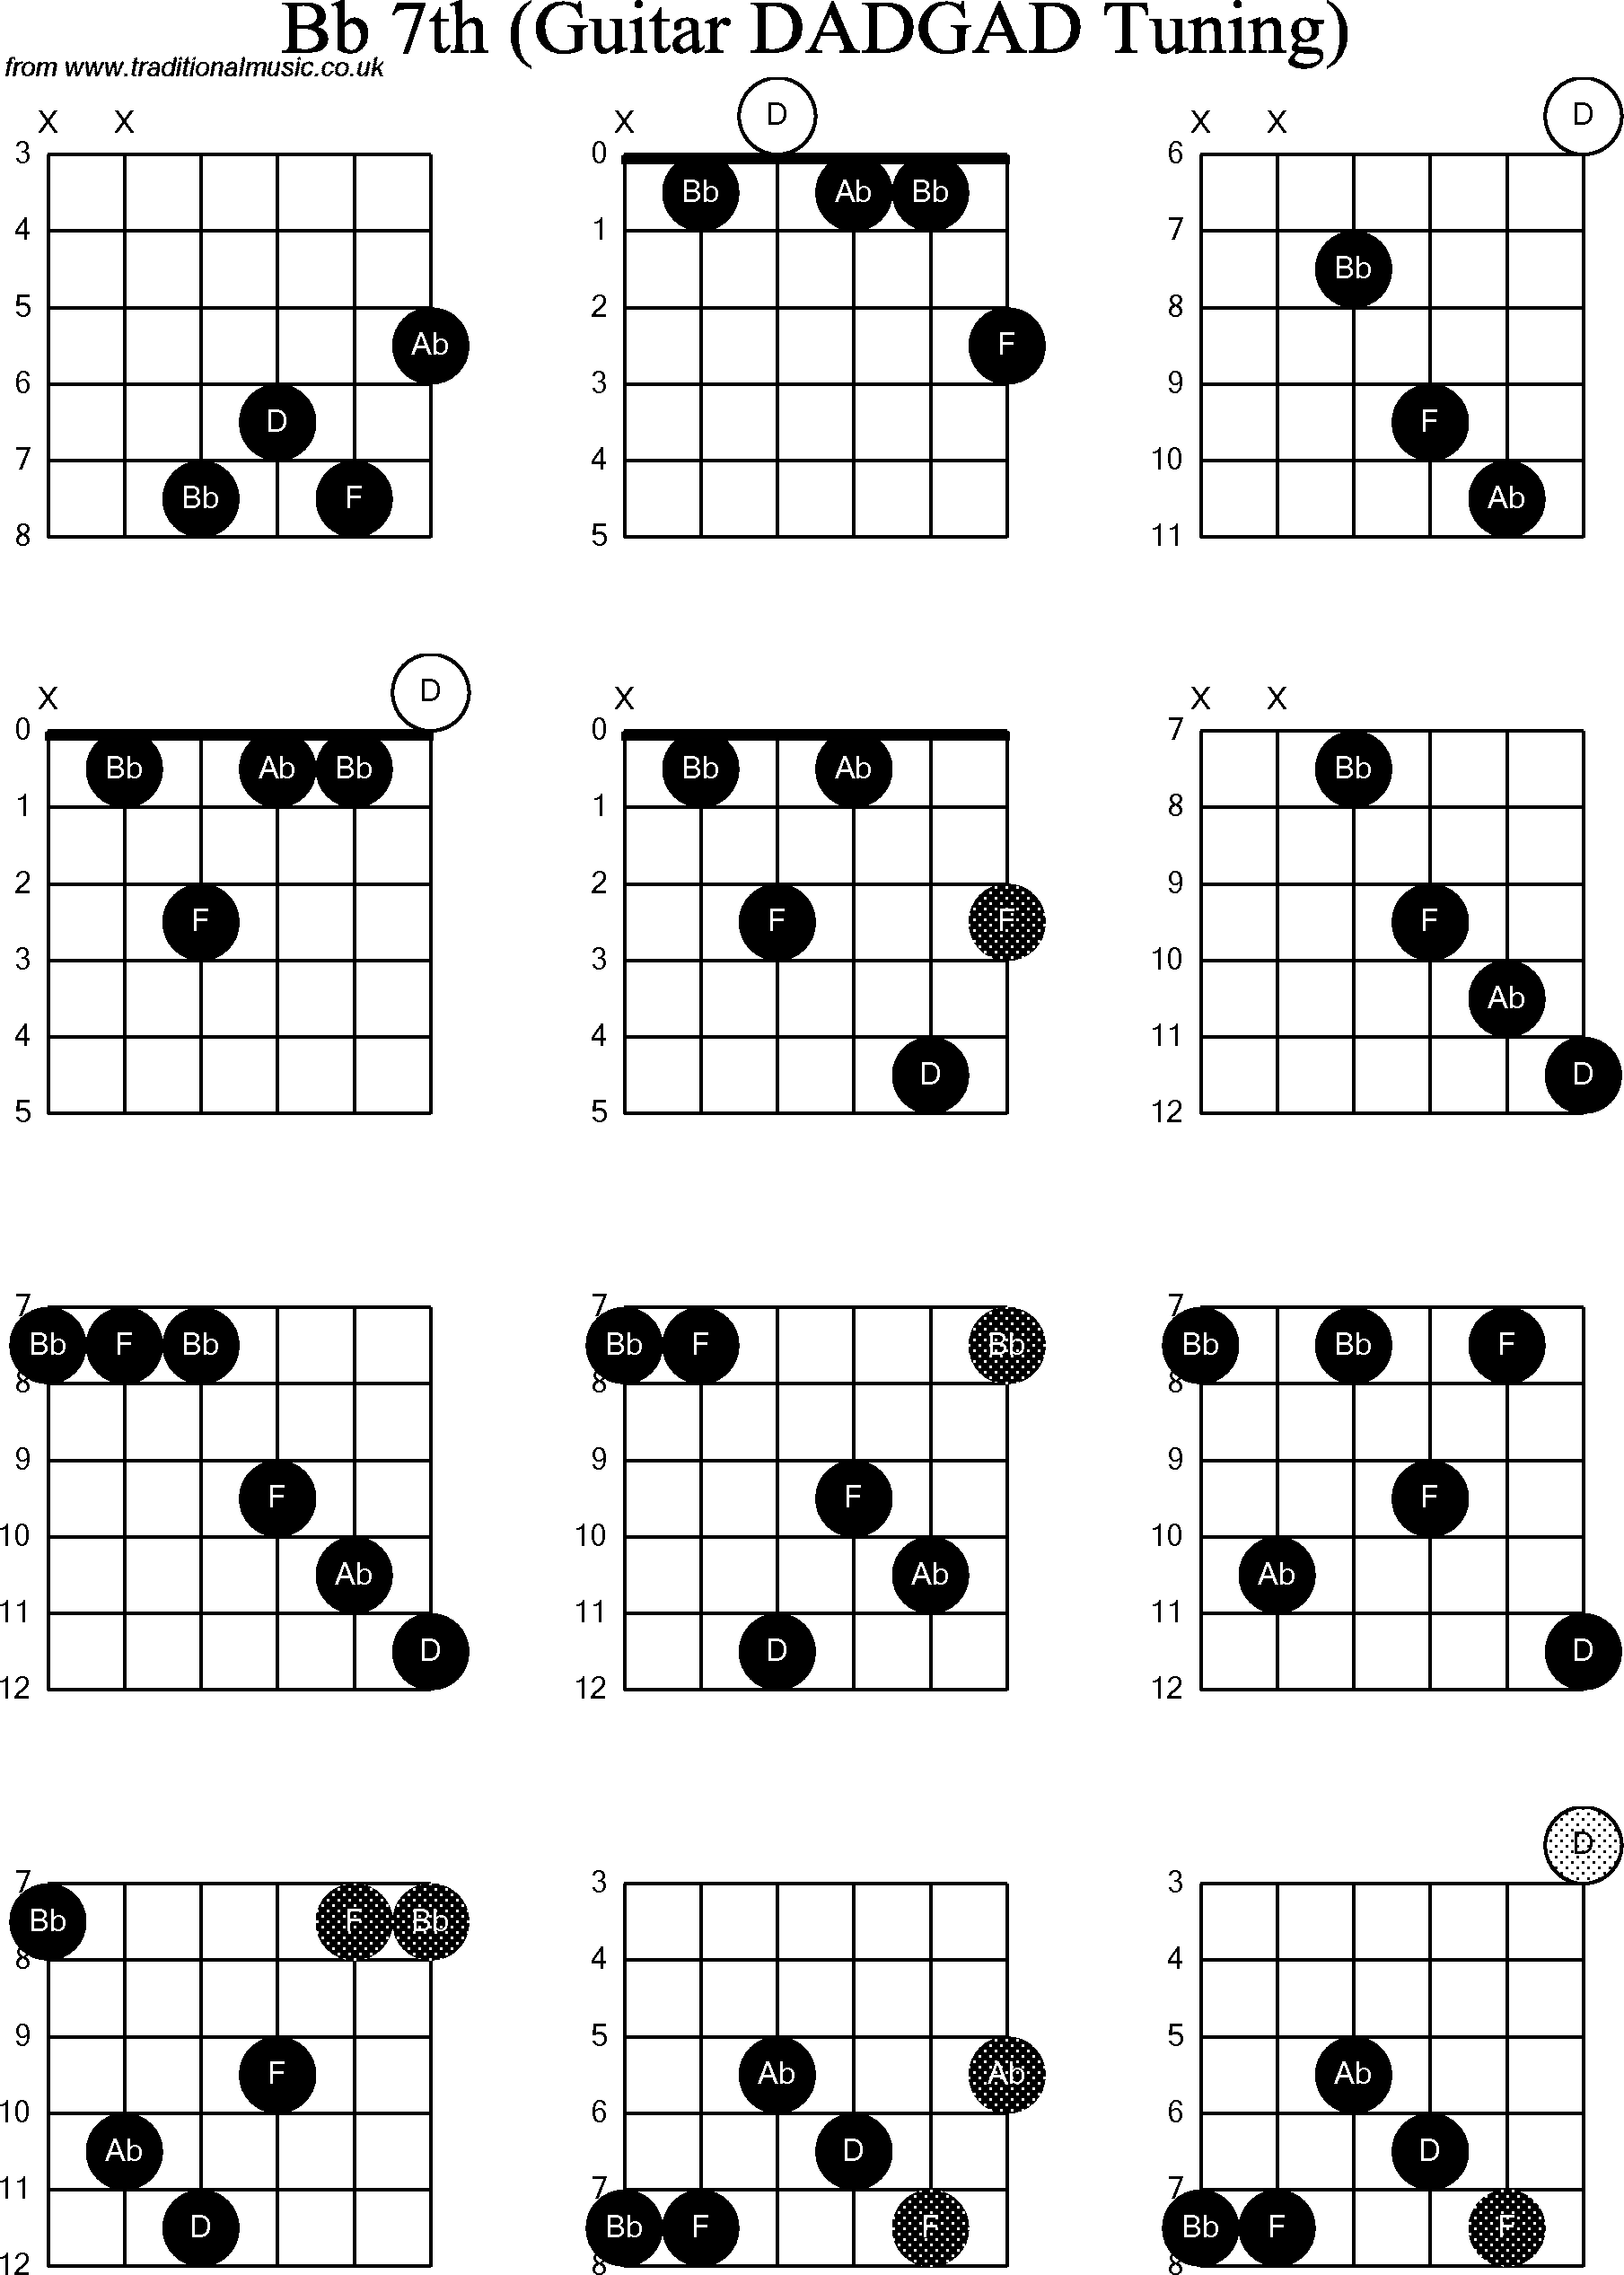 Chord Diagrams for D Modal Guitar(DADGAD), Bb7th